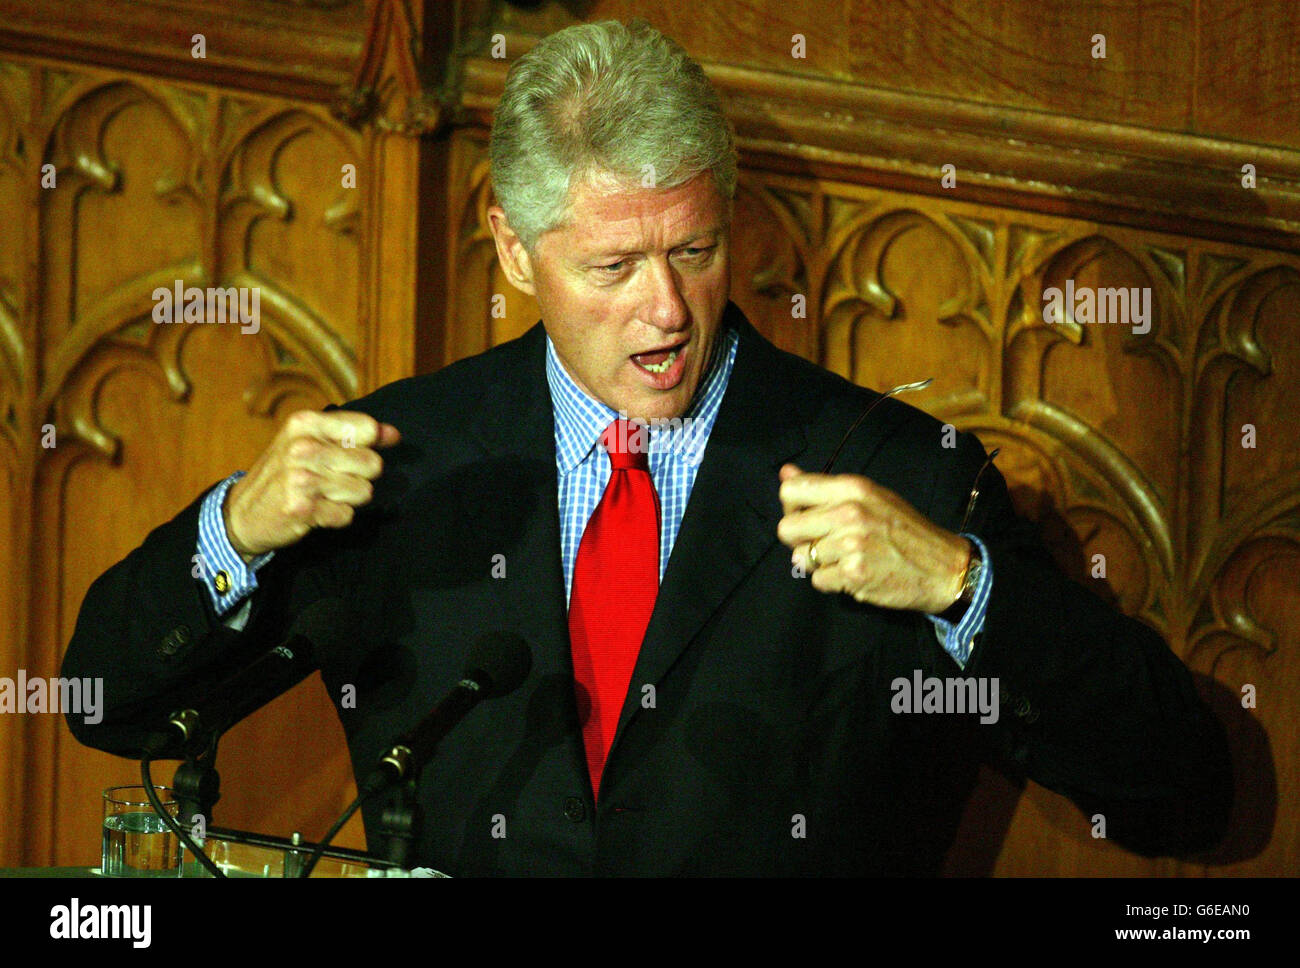 El ex presidente de los Estados Unidos de América Bill Clinton, durante su discurso en el Guildhall de la ciudad de Londres, después de la cena de la conferencia de Gobernabilidad progresiva, esta noche. Foto de stock